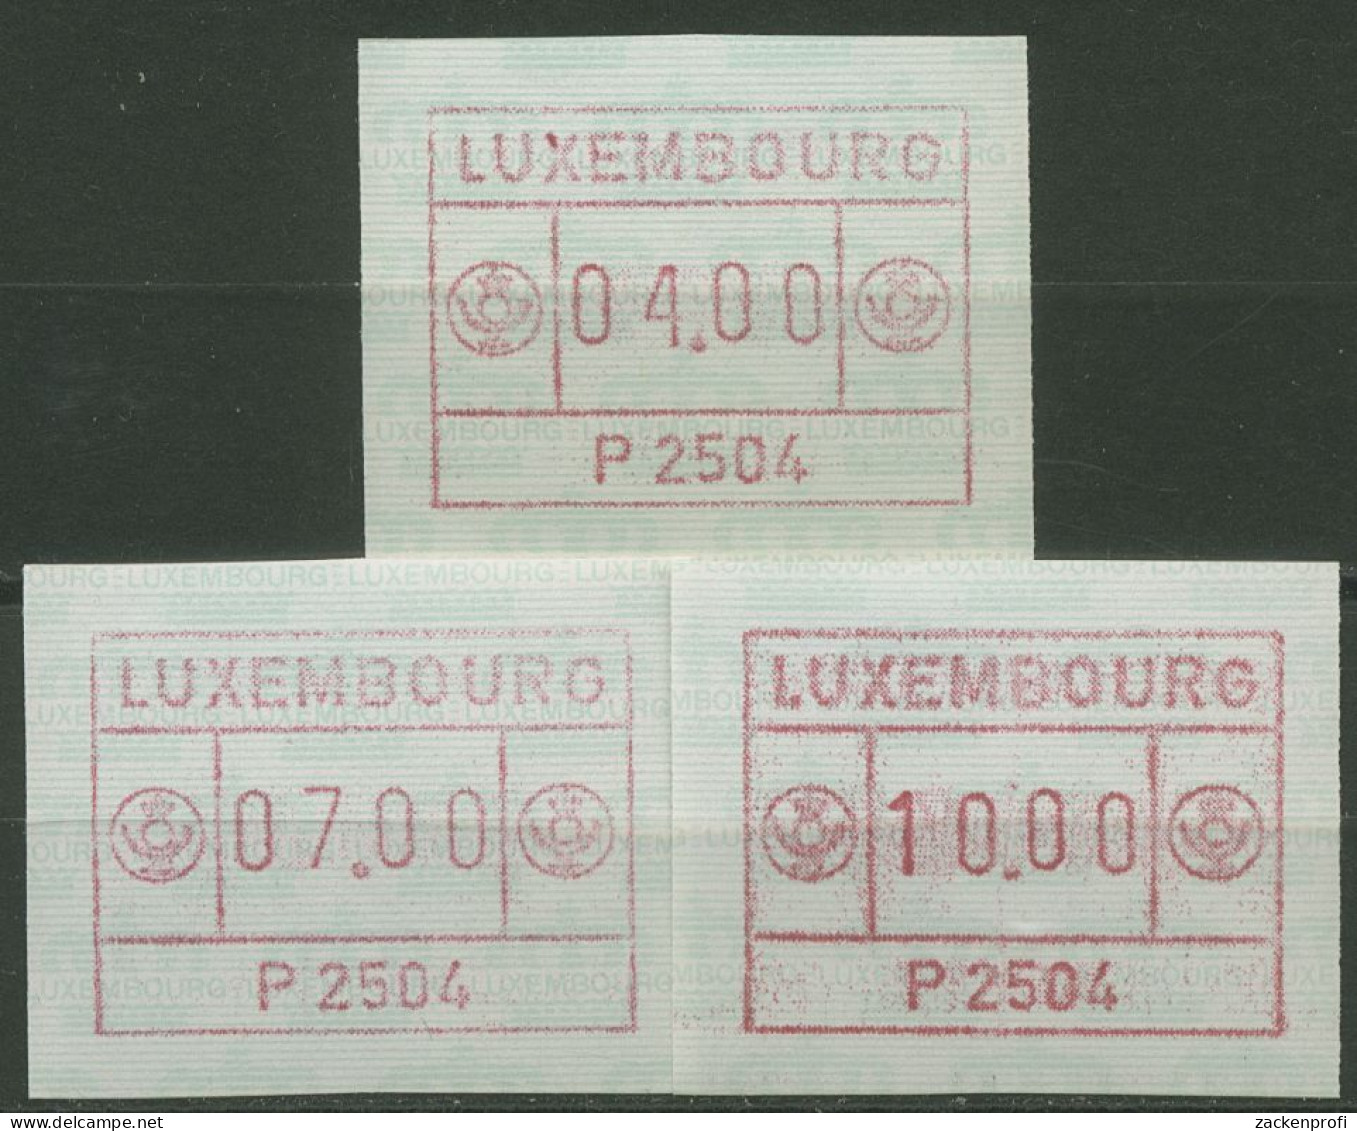 Luxemburg 1983 Automatenmarke Automat P 2504 Satz 1.4 B S1 Postfrisch - Frankeervignetten